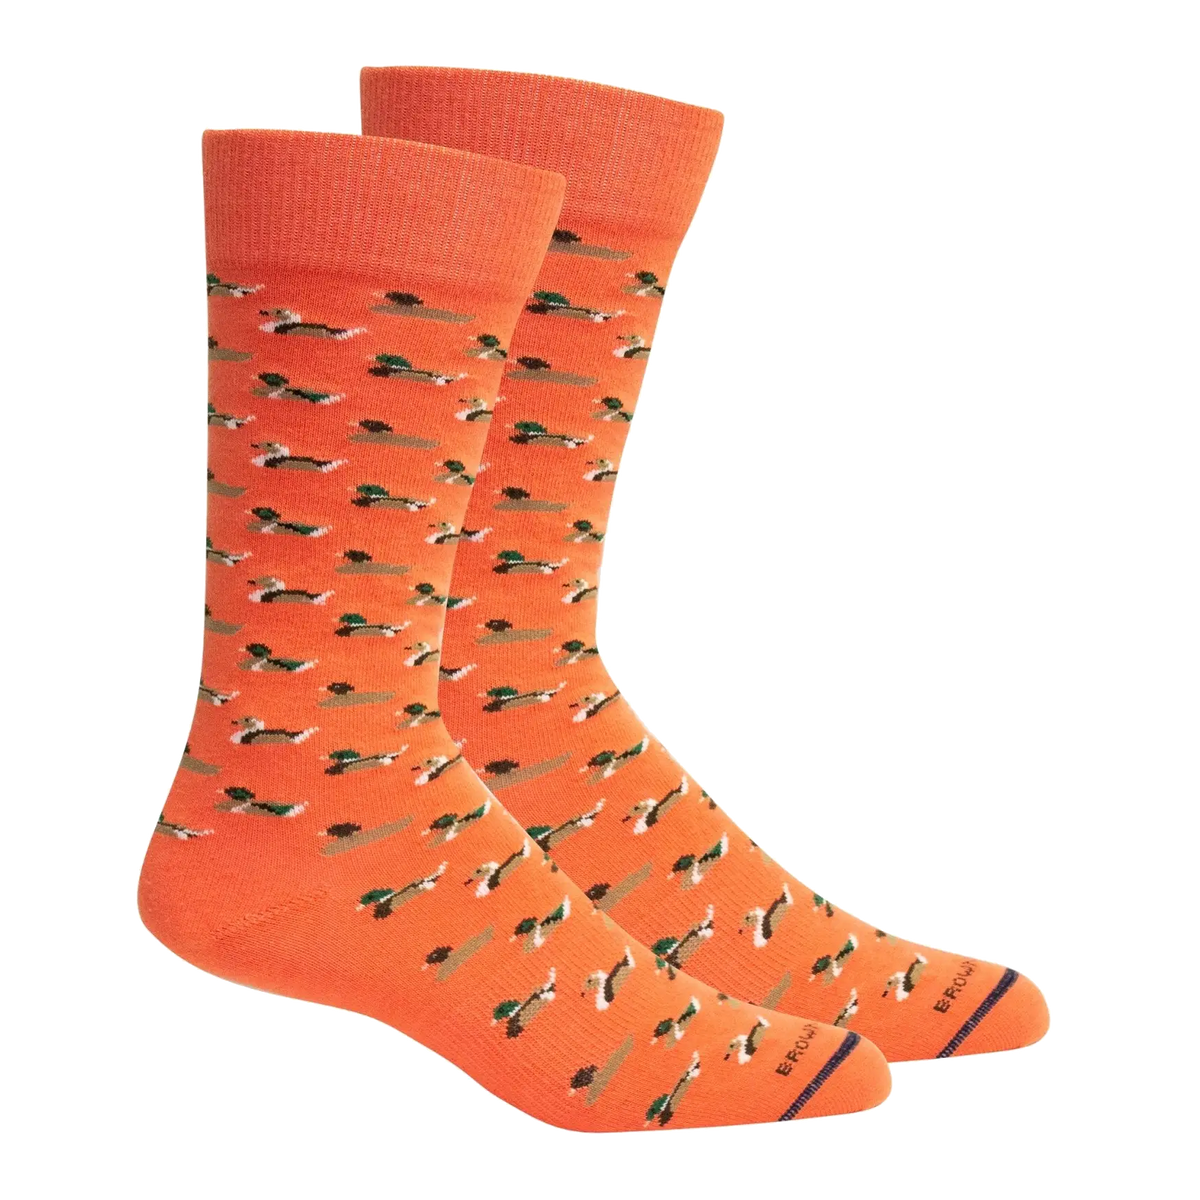 Currituck Socks - Dubarry - 1 pair